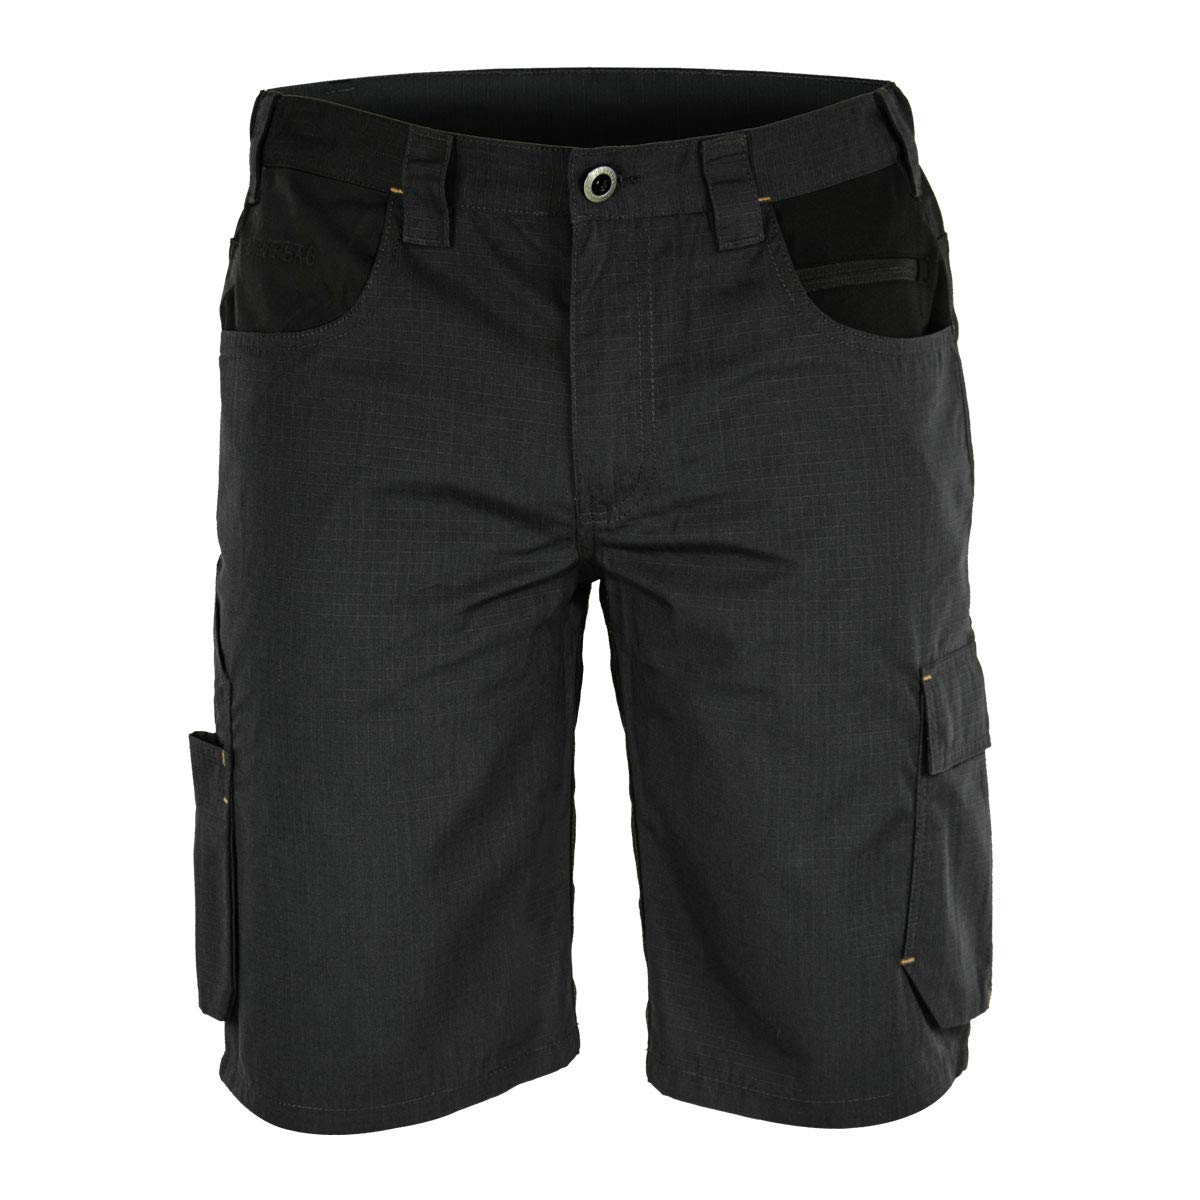 FORSBERG Braxa Kurze Arbeitshose mit elastischen Stretchzonen, robuste Shorts mit Stretcheinsätzen, Farbe:anthrazit/schwarz, Größe:50